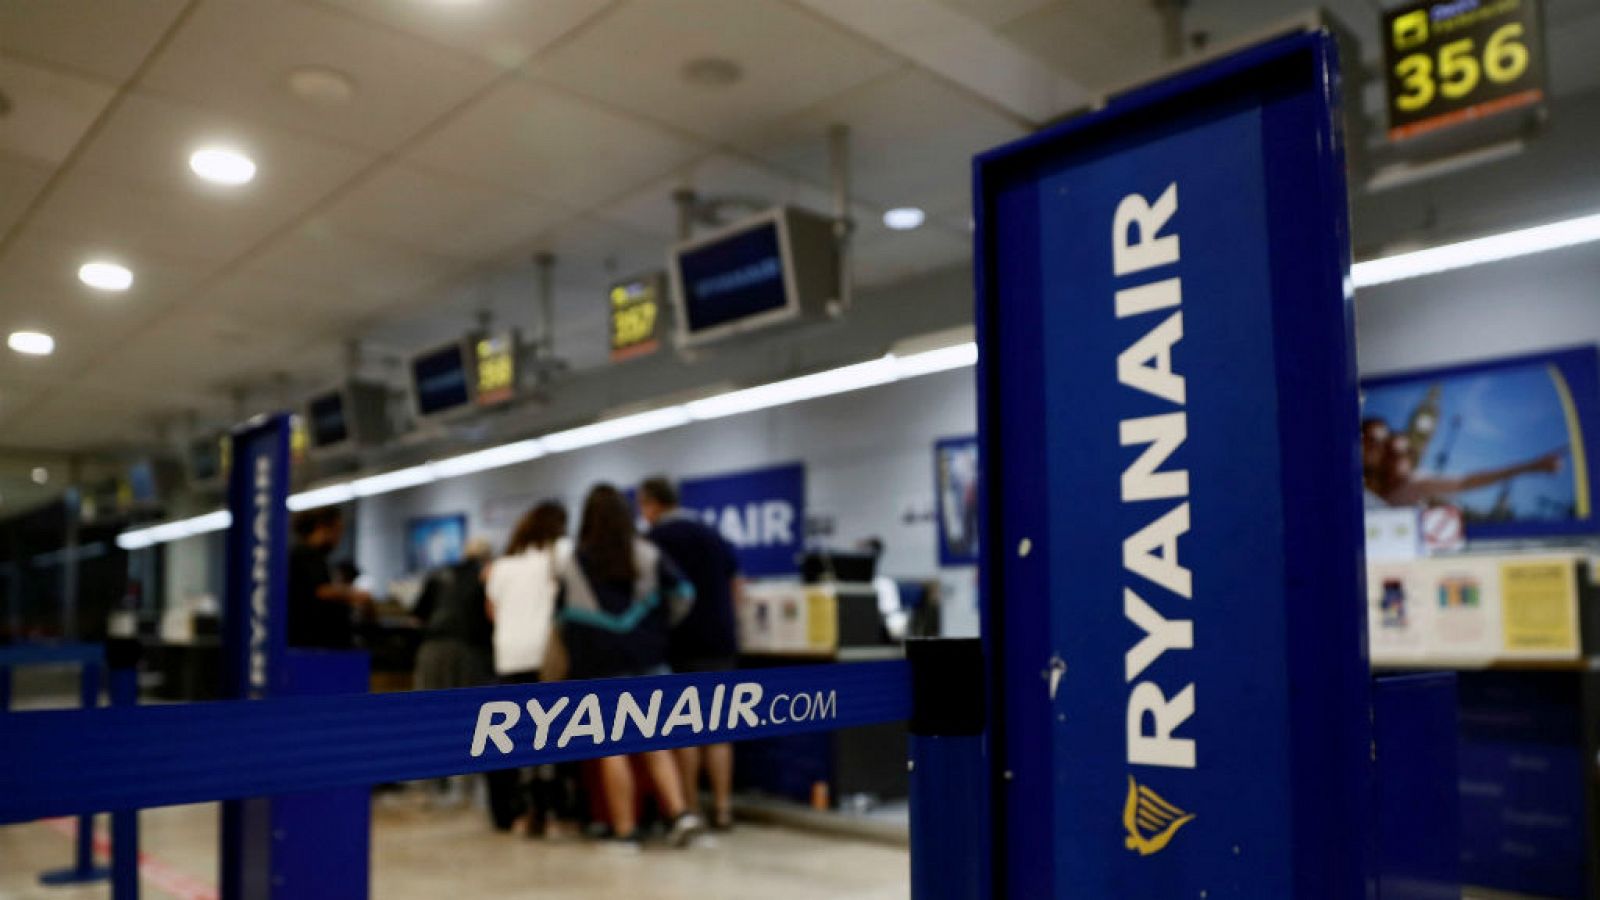  Boletines Radio 5 - Los pilotos de Ryanair harán 5 días de huelga en septiembre - Escuchar ahora